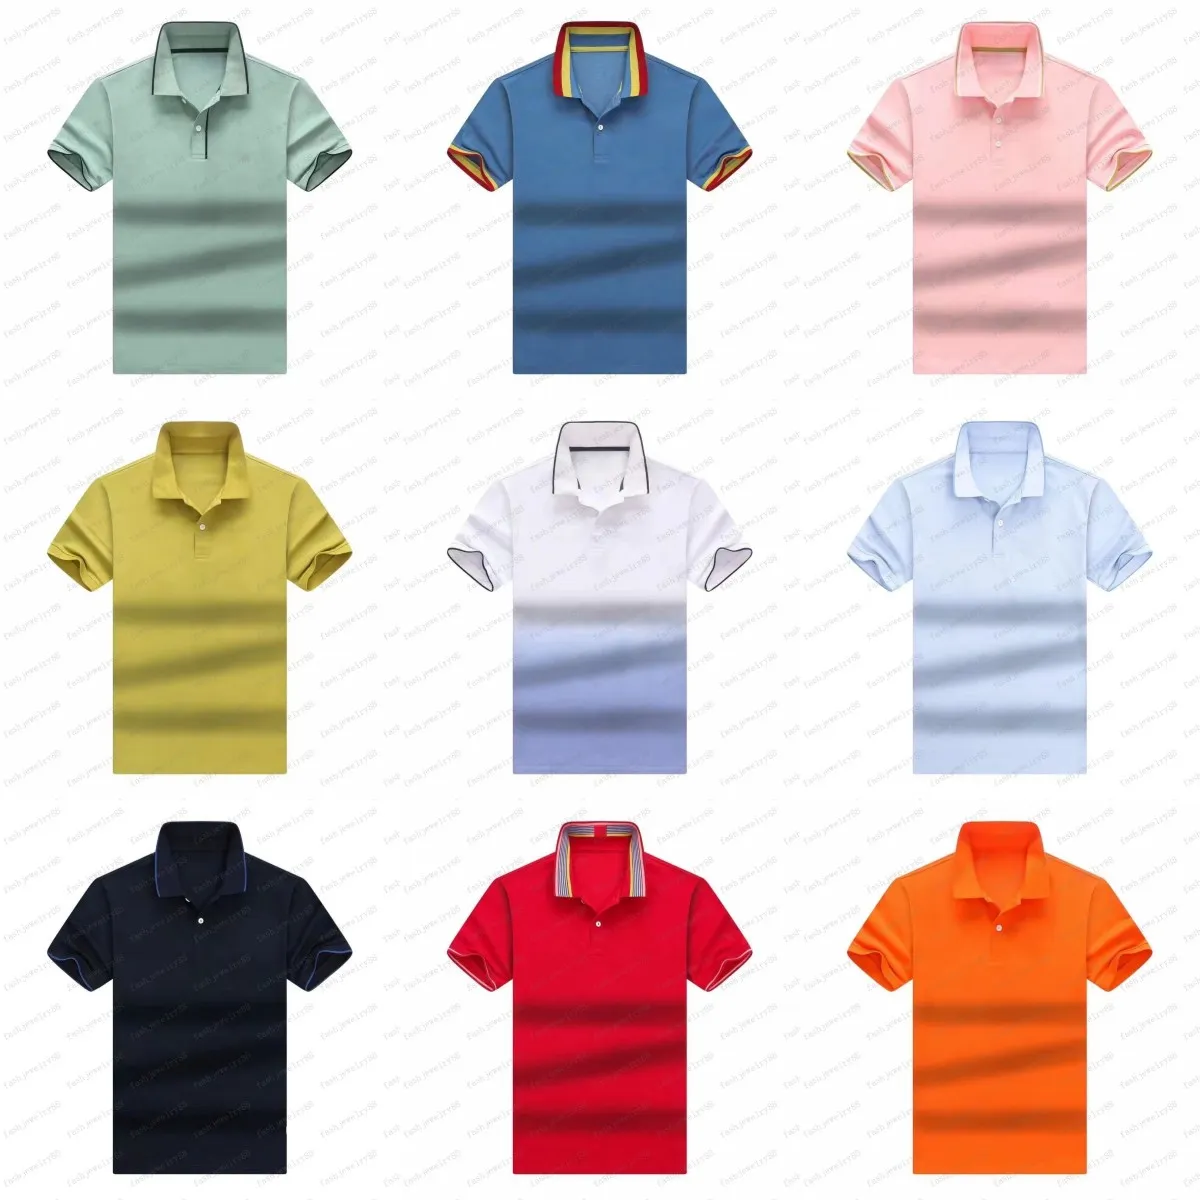 Hommes polo chemise de marque de rue de la mode américaine polo de créateur transport gratuit hommes t-shirt taille M - XXXL